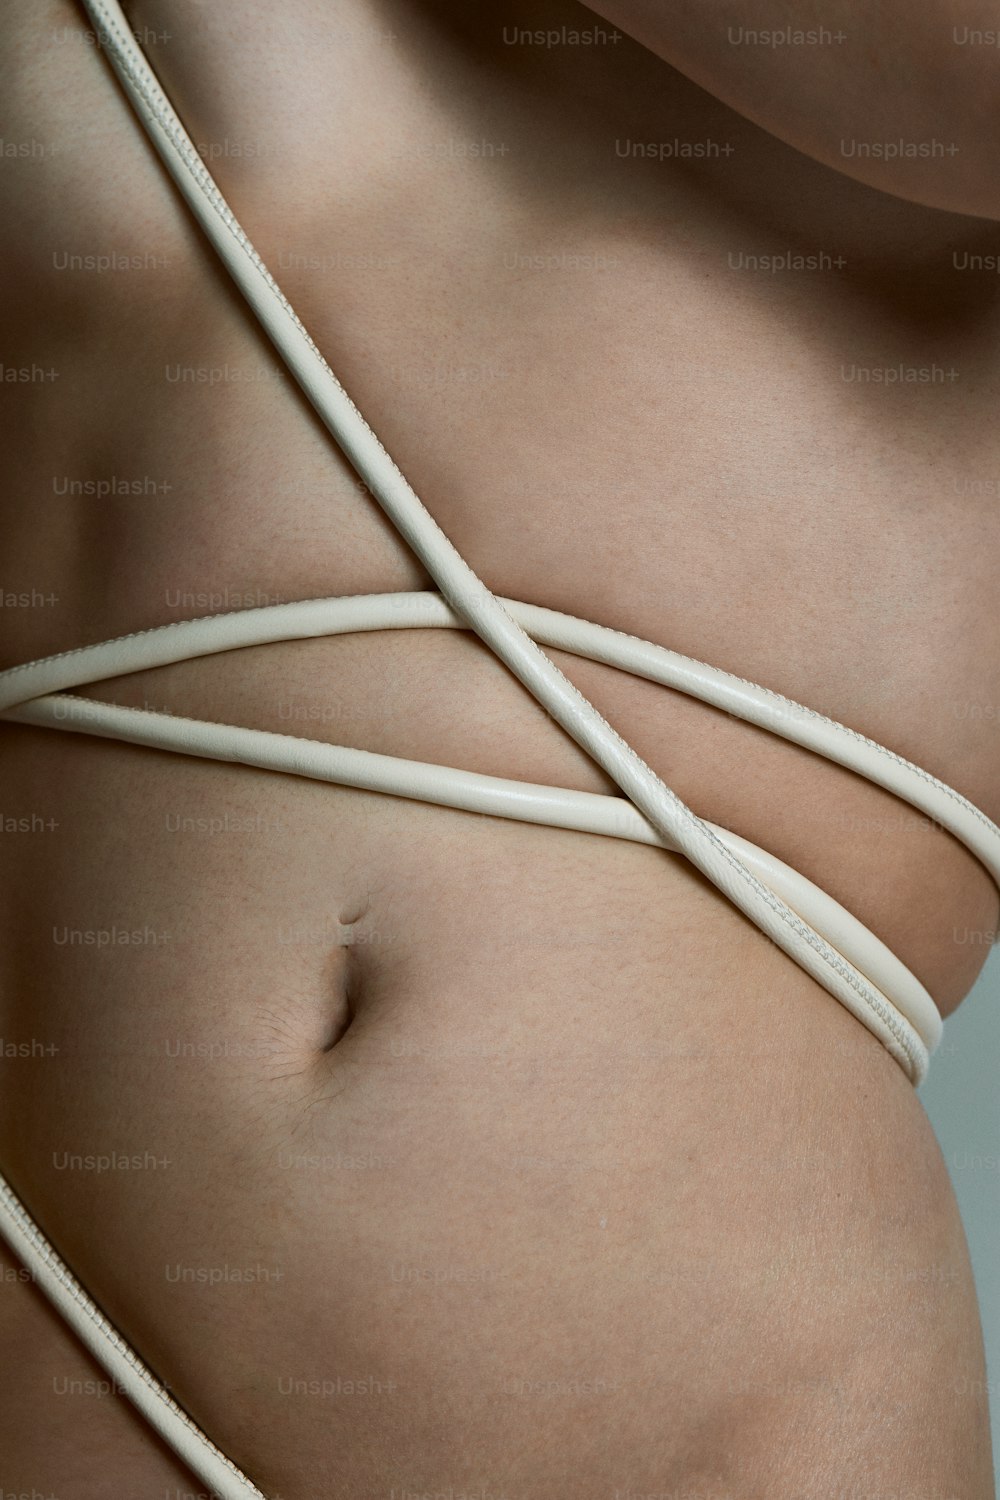 um close up do estômago de uma mulher com uma corda enrolada em torno dele